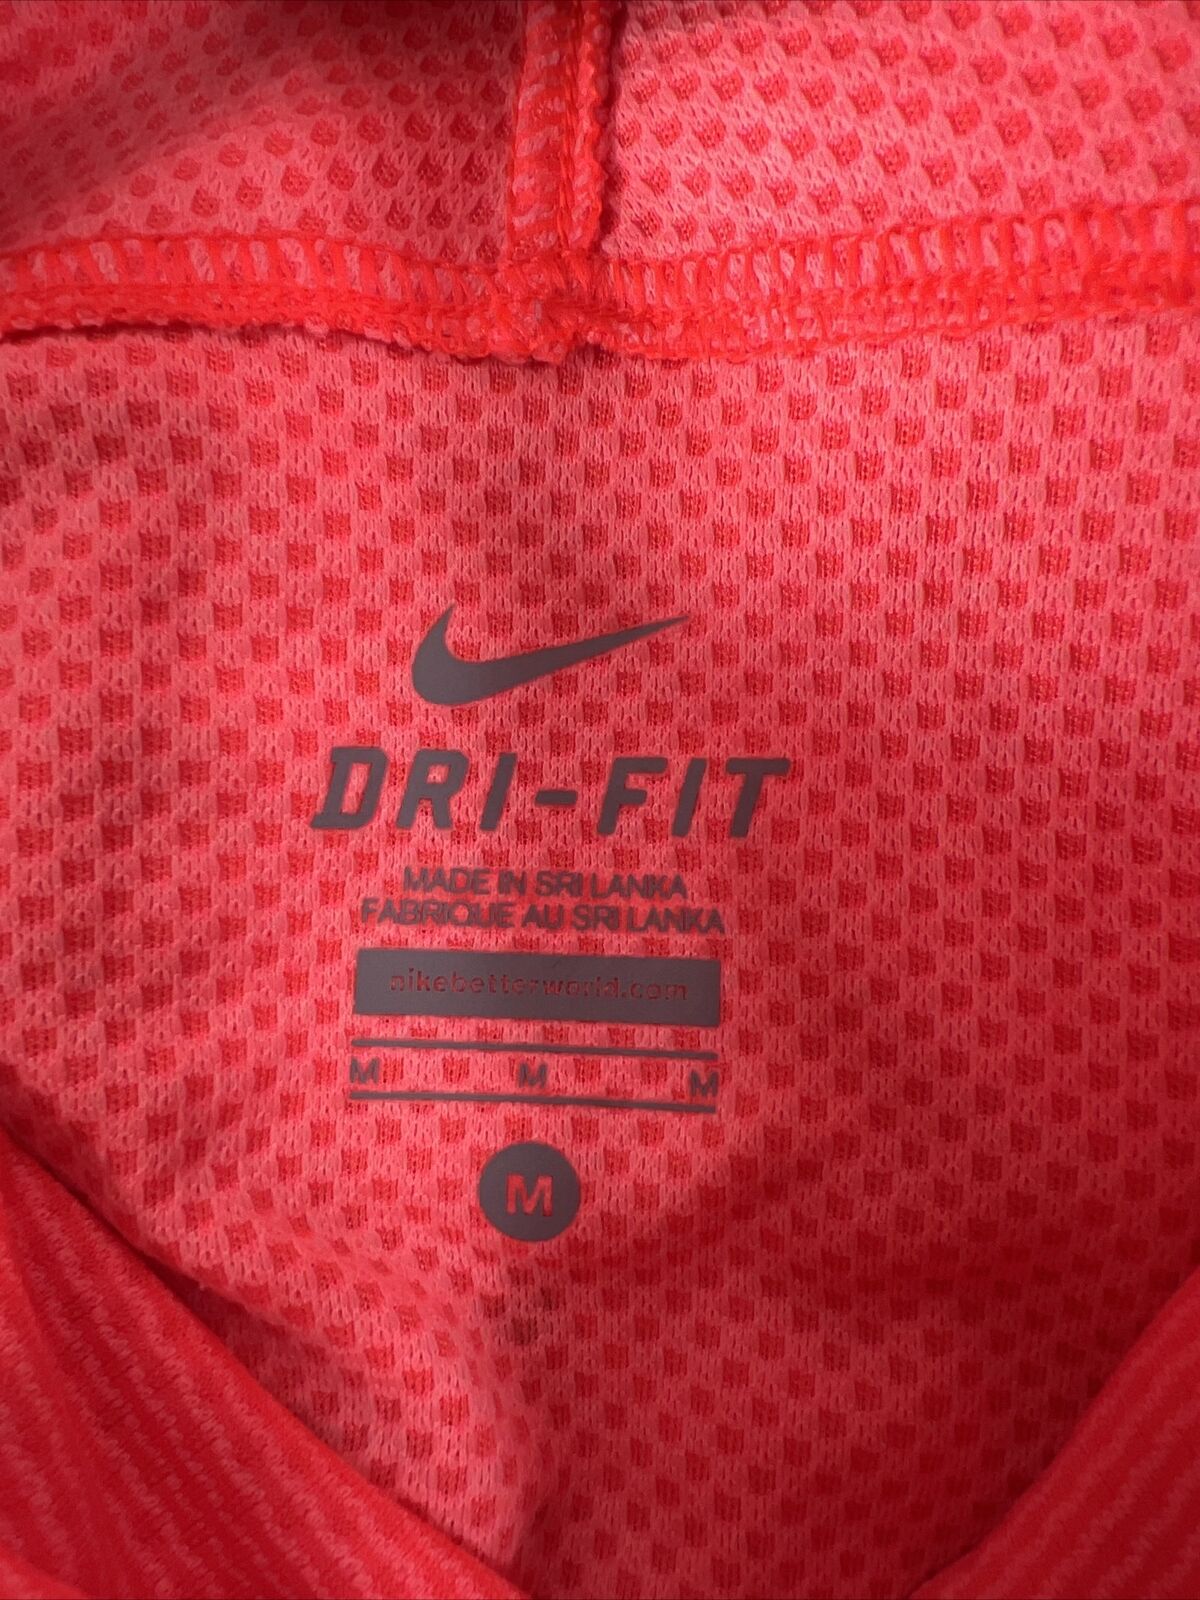 Nike Women's Bright Coral Pink Aeroreact Running Shirt - M